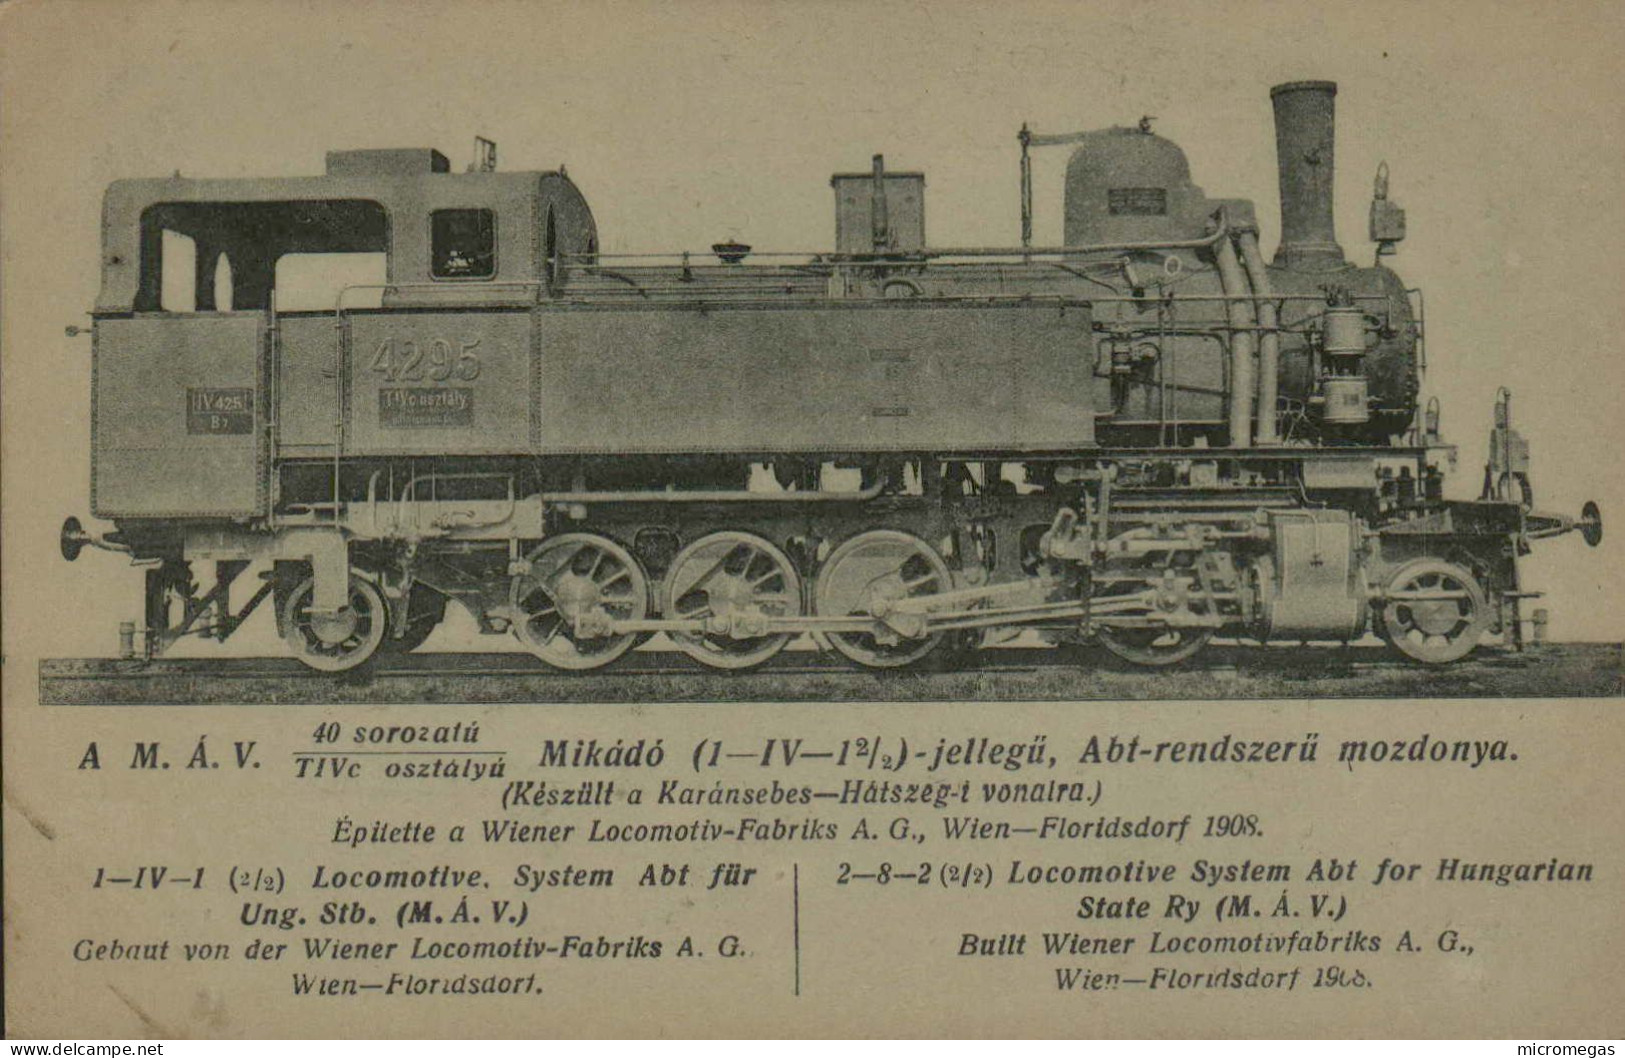 Hongrie - 2-8-2 (2/2) Locomotive  System Abt - Wien-Floridsdorf 1908 - Trains